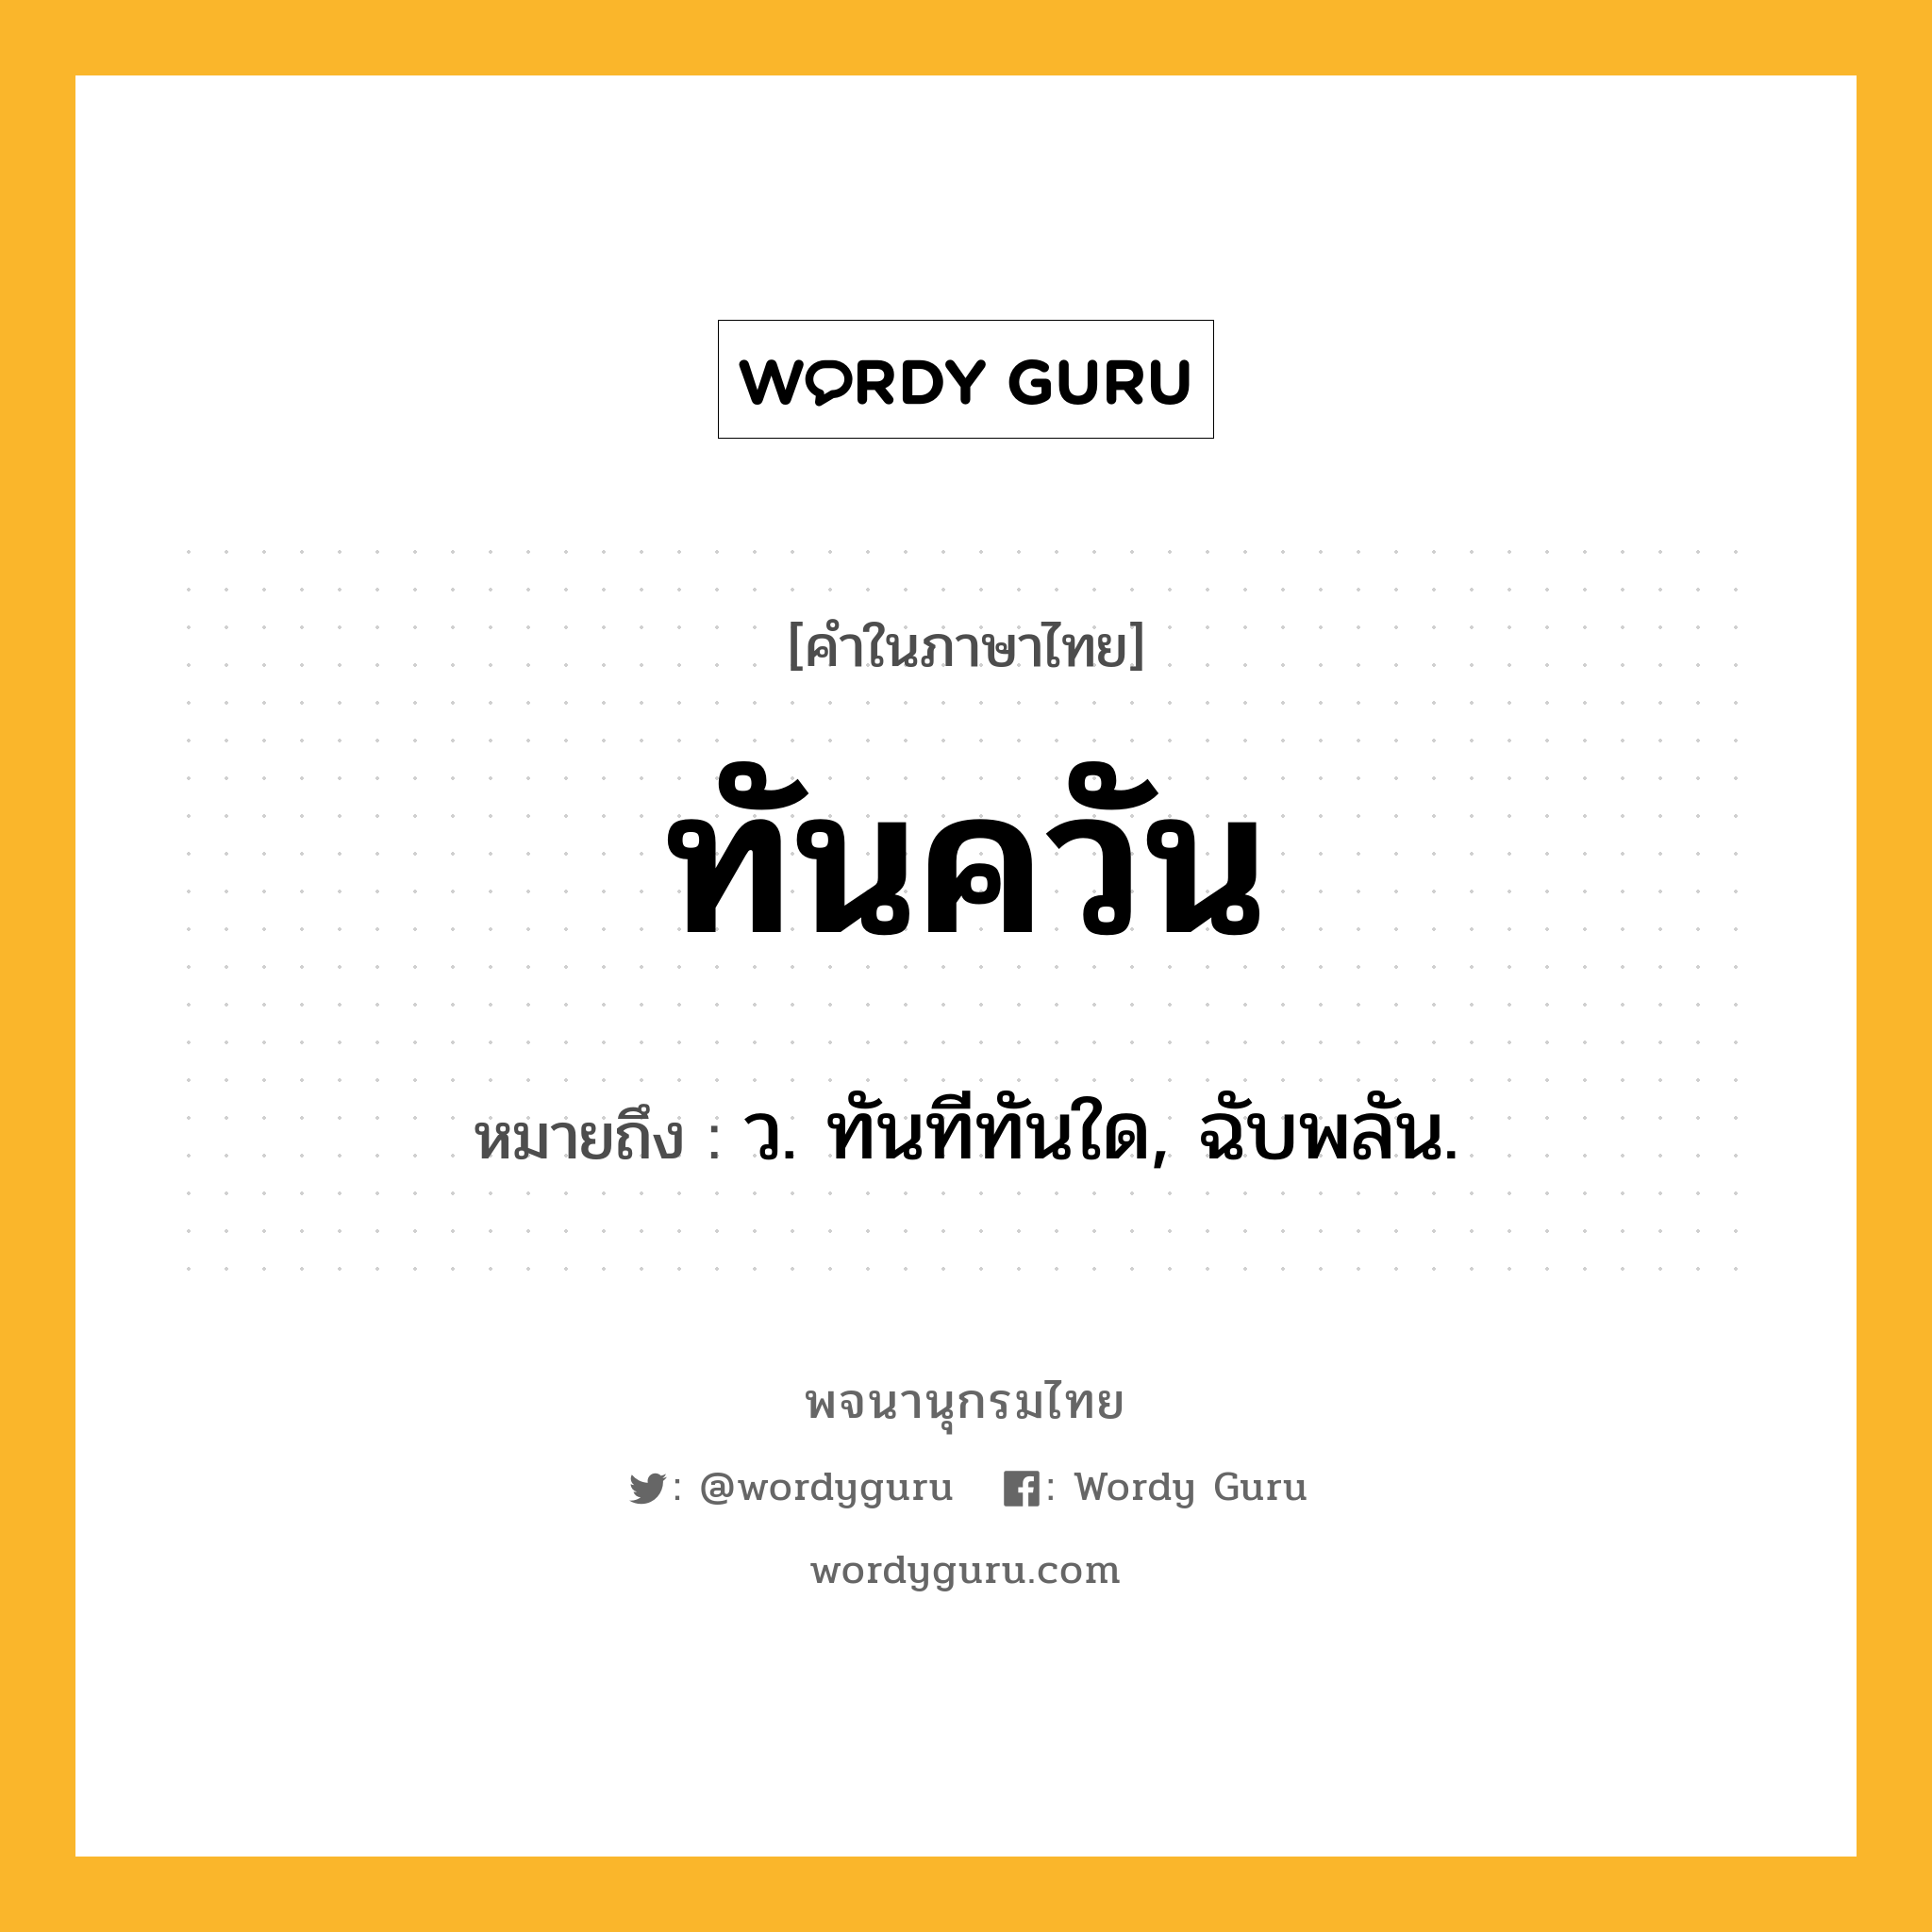 ทันควัน หมายถึงอะไร?, คำในภาษาไทย ทันควัน หมายถึง ว. ทันทีทันใด, ฉับพลัน.